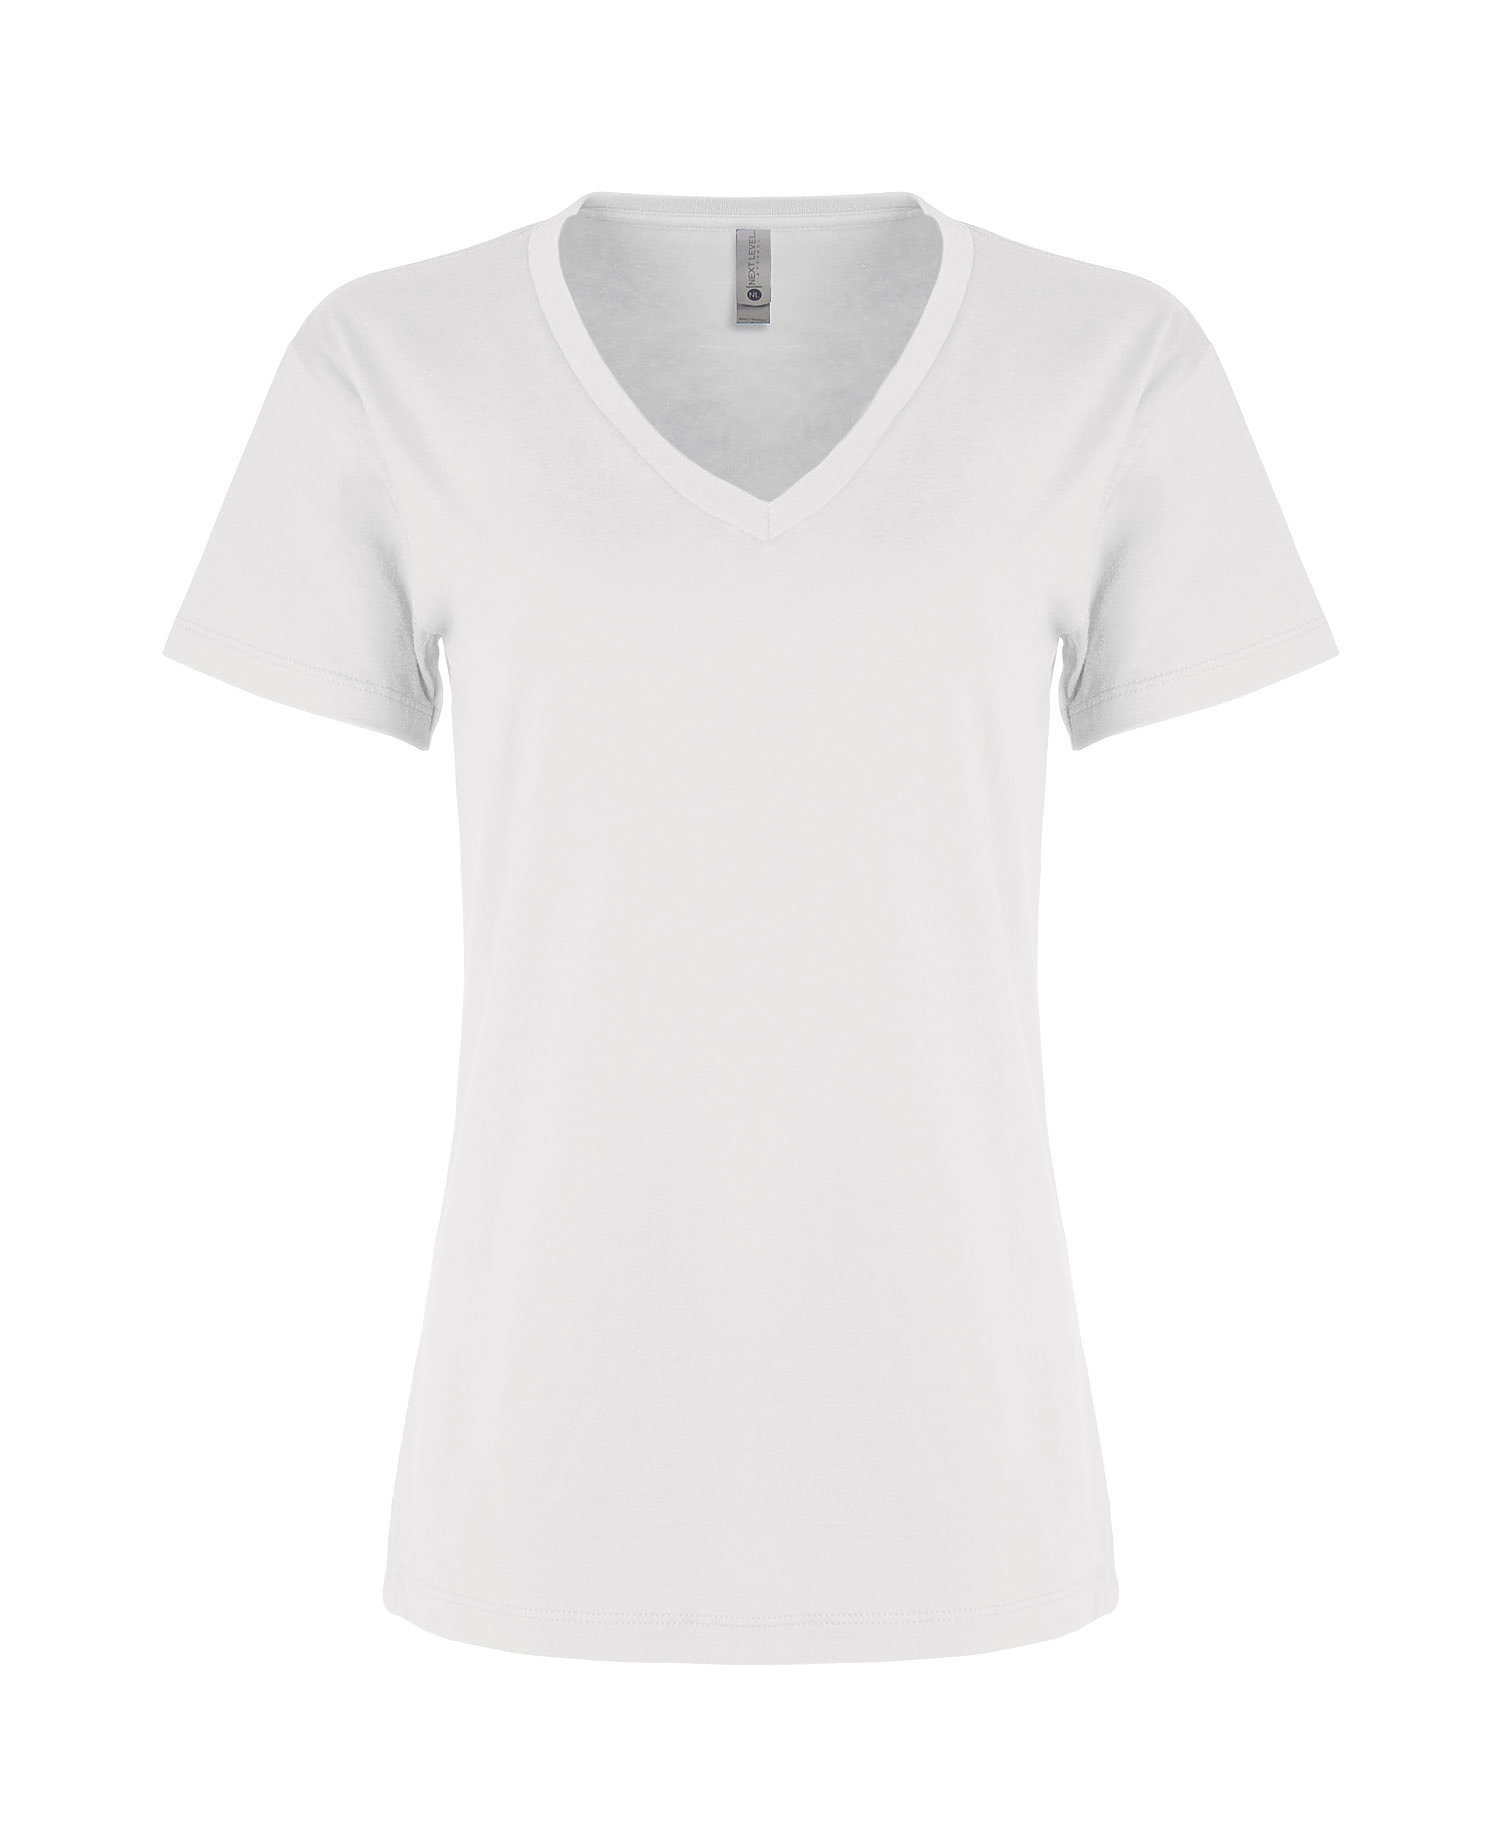 Next Level - 3940 - Women's Fine Jersey Relaxed V T-Shirt